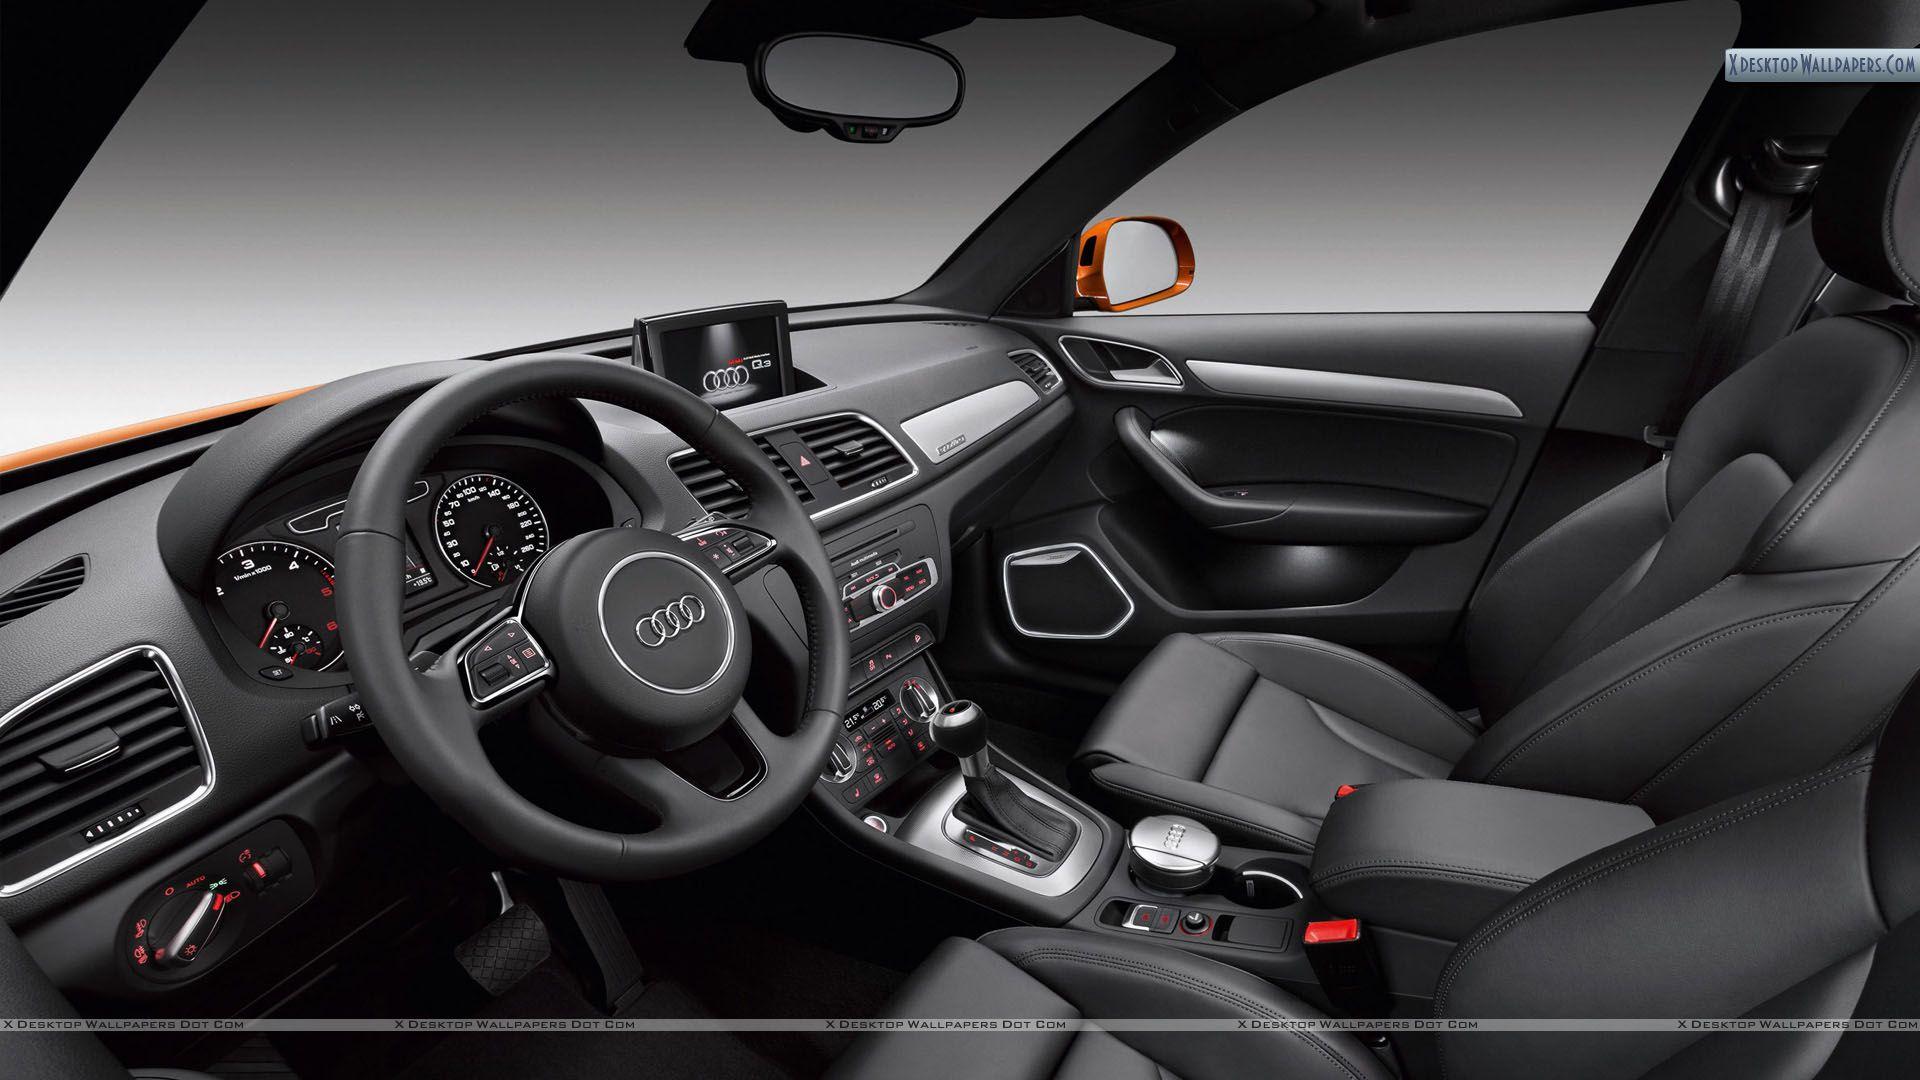 Audi Q3 Interior Picture Wallpaper